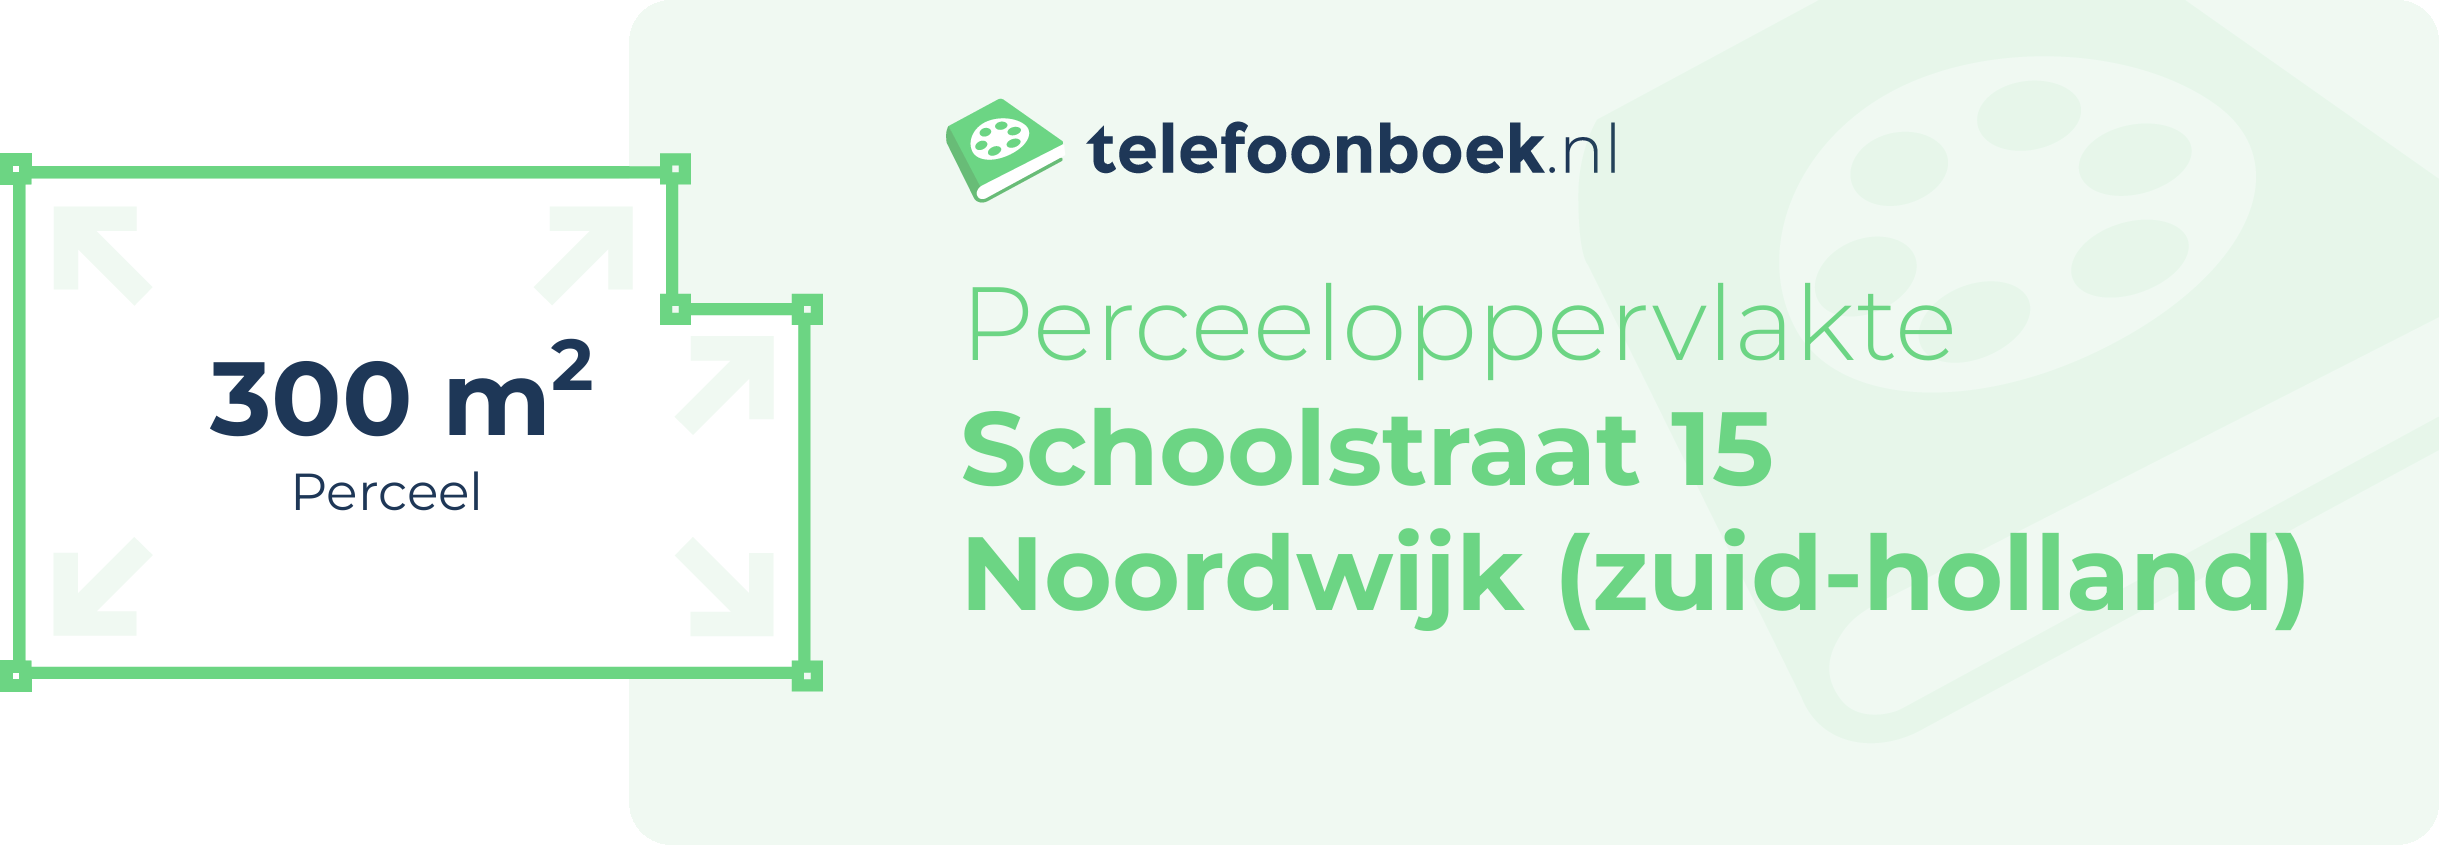 Perceeloppervlakte Schoolstraat 15 Noordwijk (Zuid-Holland)